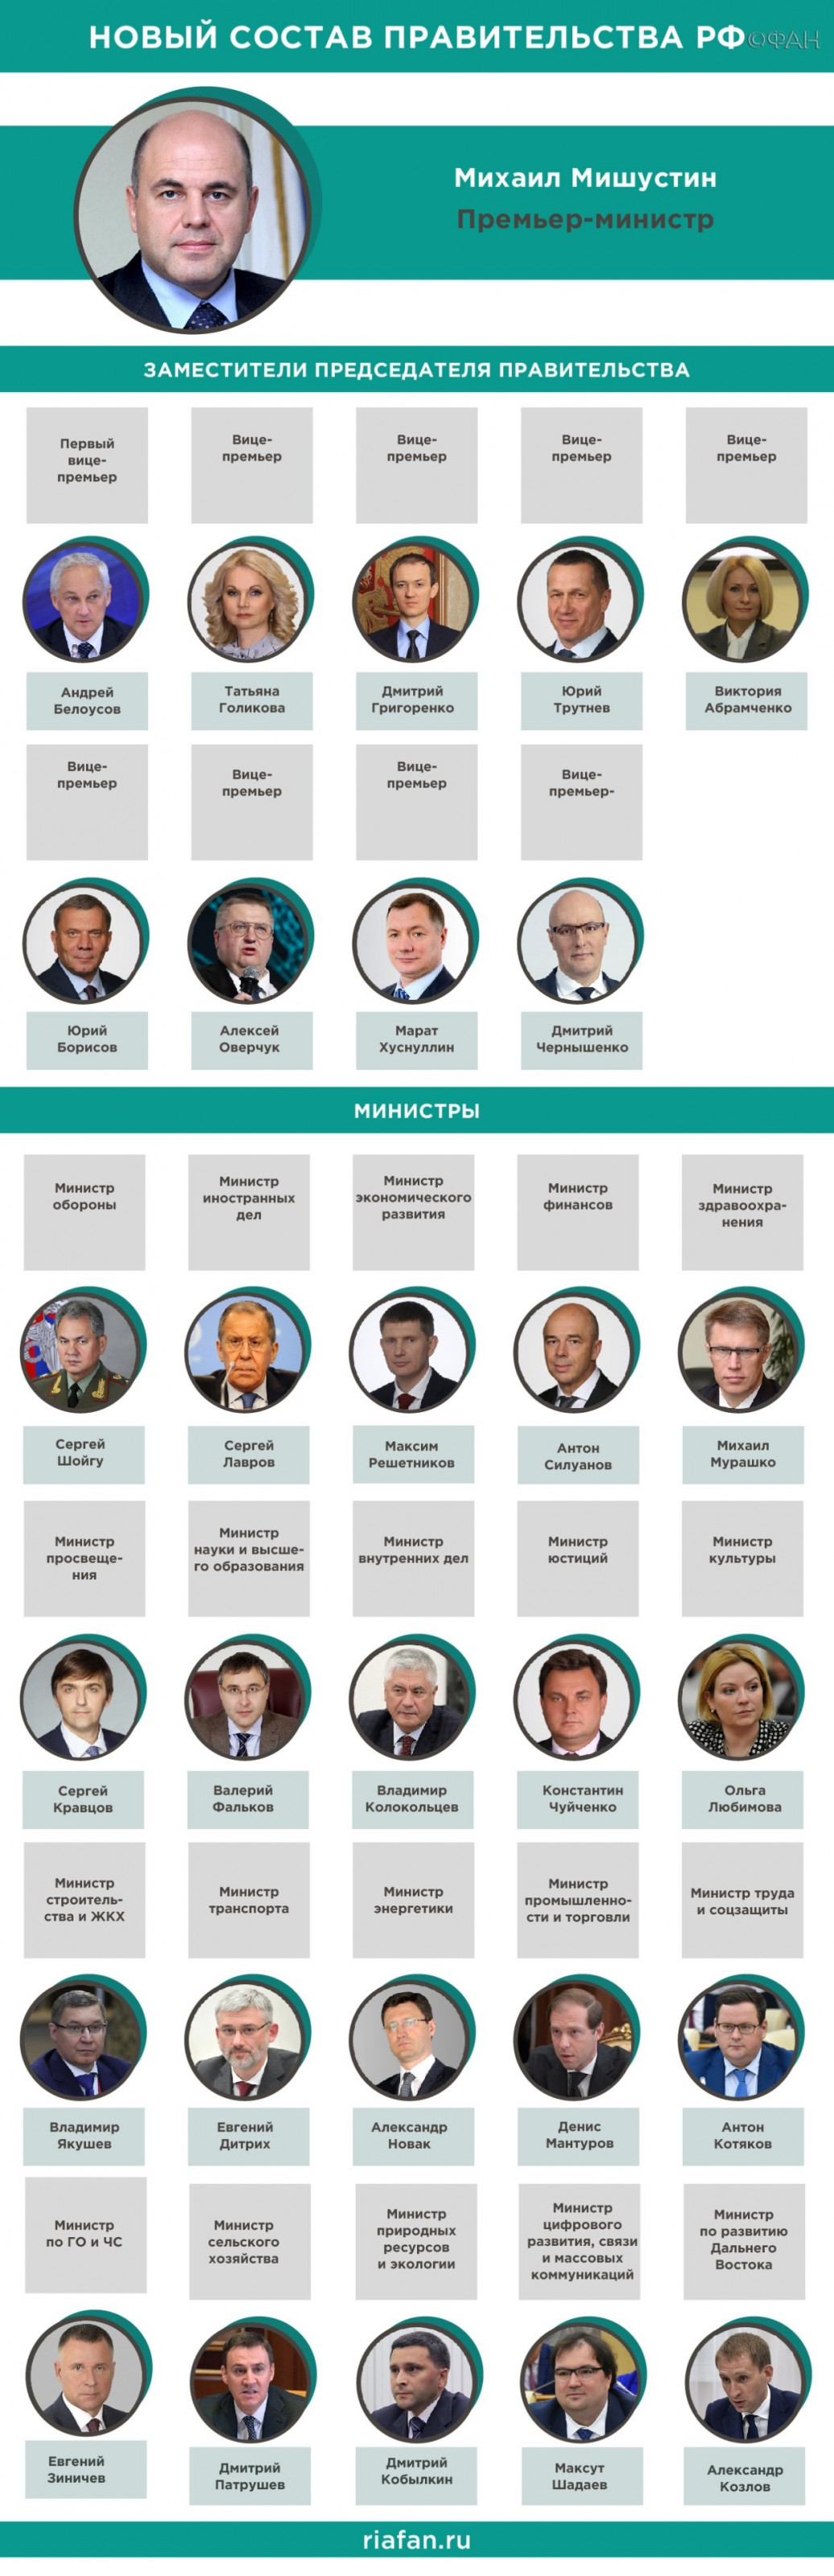 Володин связал с новым составом правительства РФ серьезные изменения в социальной сфере